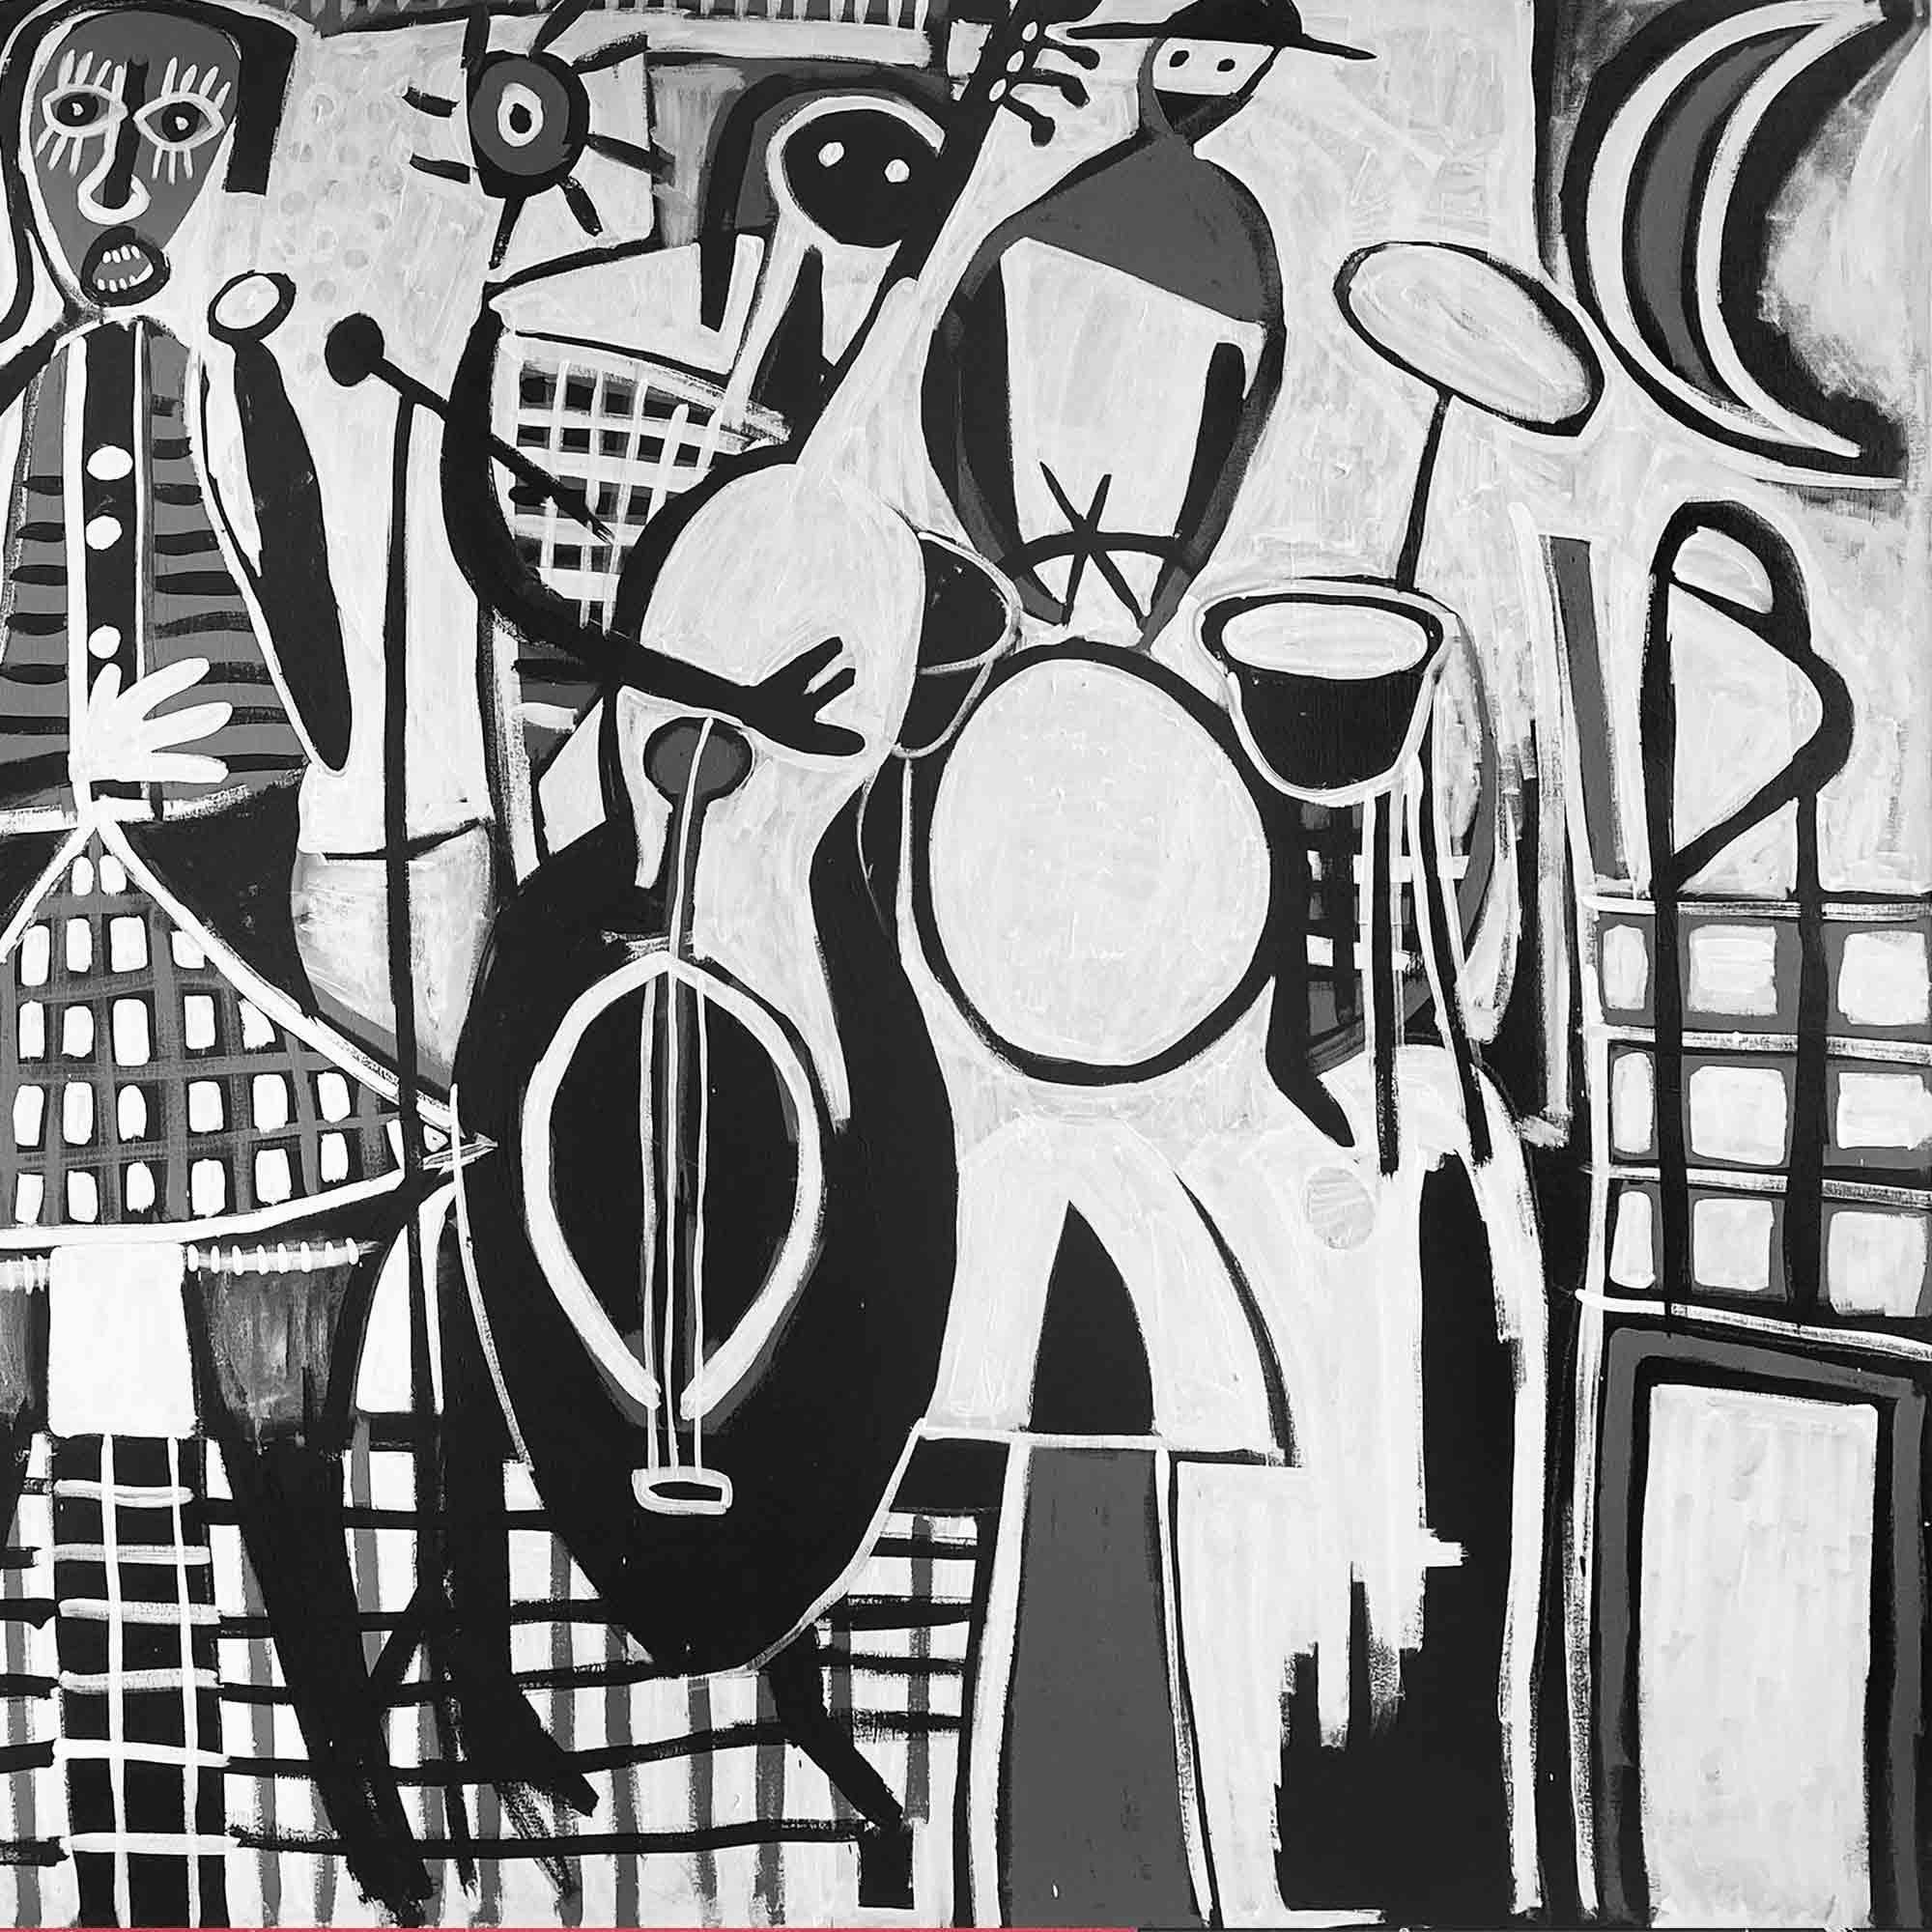 Art contemporain, peinture abstraite
Acrylique sur toile
160x270cm
Signé 
LIVRAISON GRATUITE ROLLE


A propos de l'artiste
Enrique Pichardo (Mexico, 1973) est diplômé de l'Escuela Nacional de Pintura, Escultura y Grabado (ENPEG) 